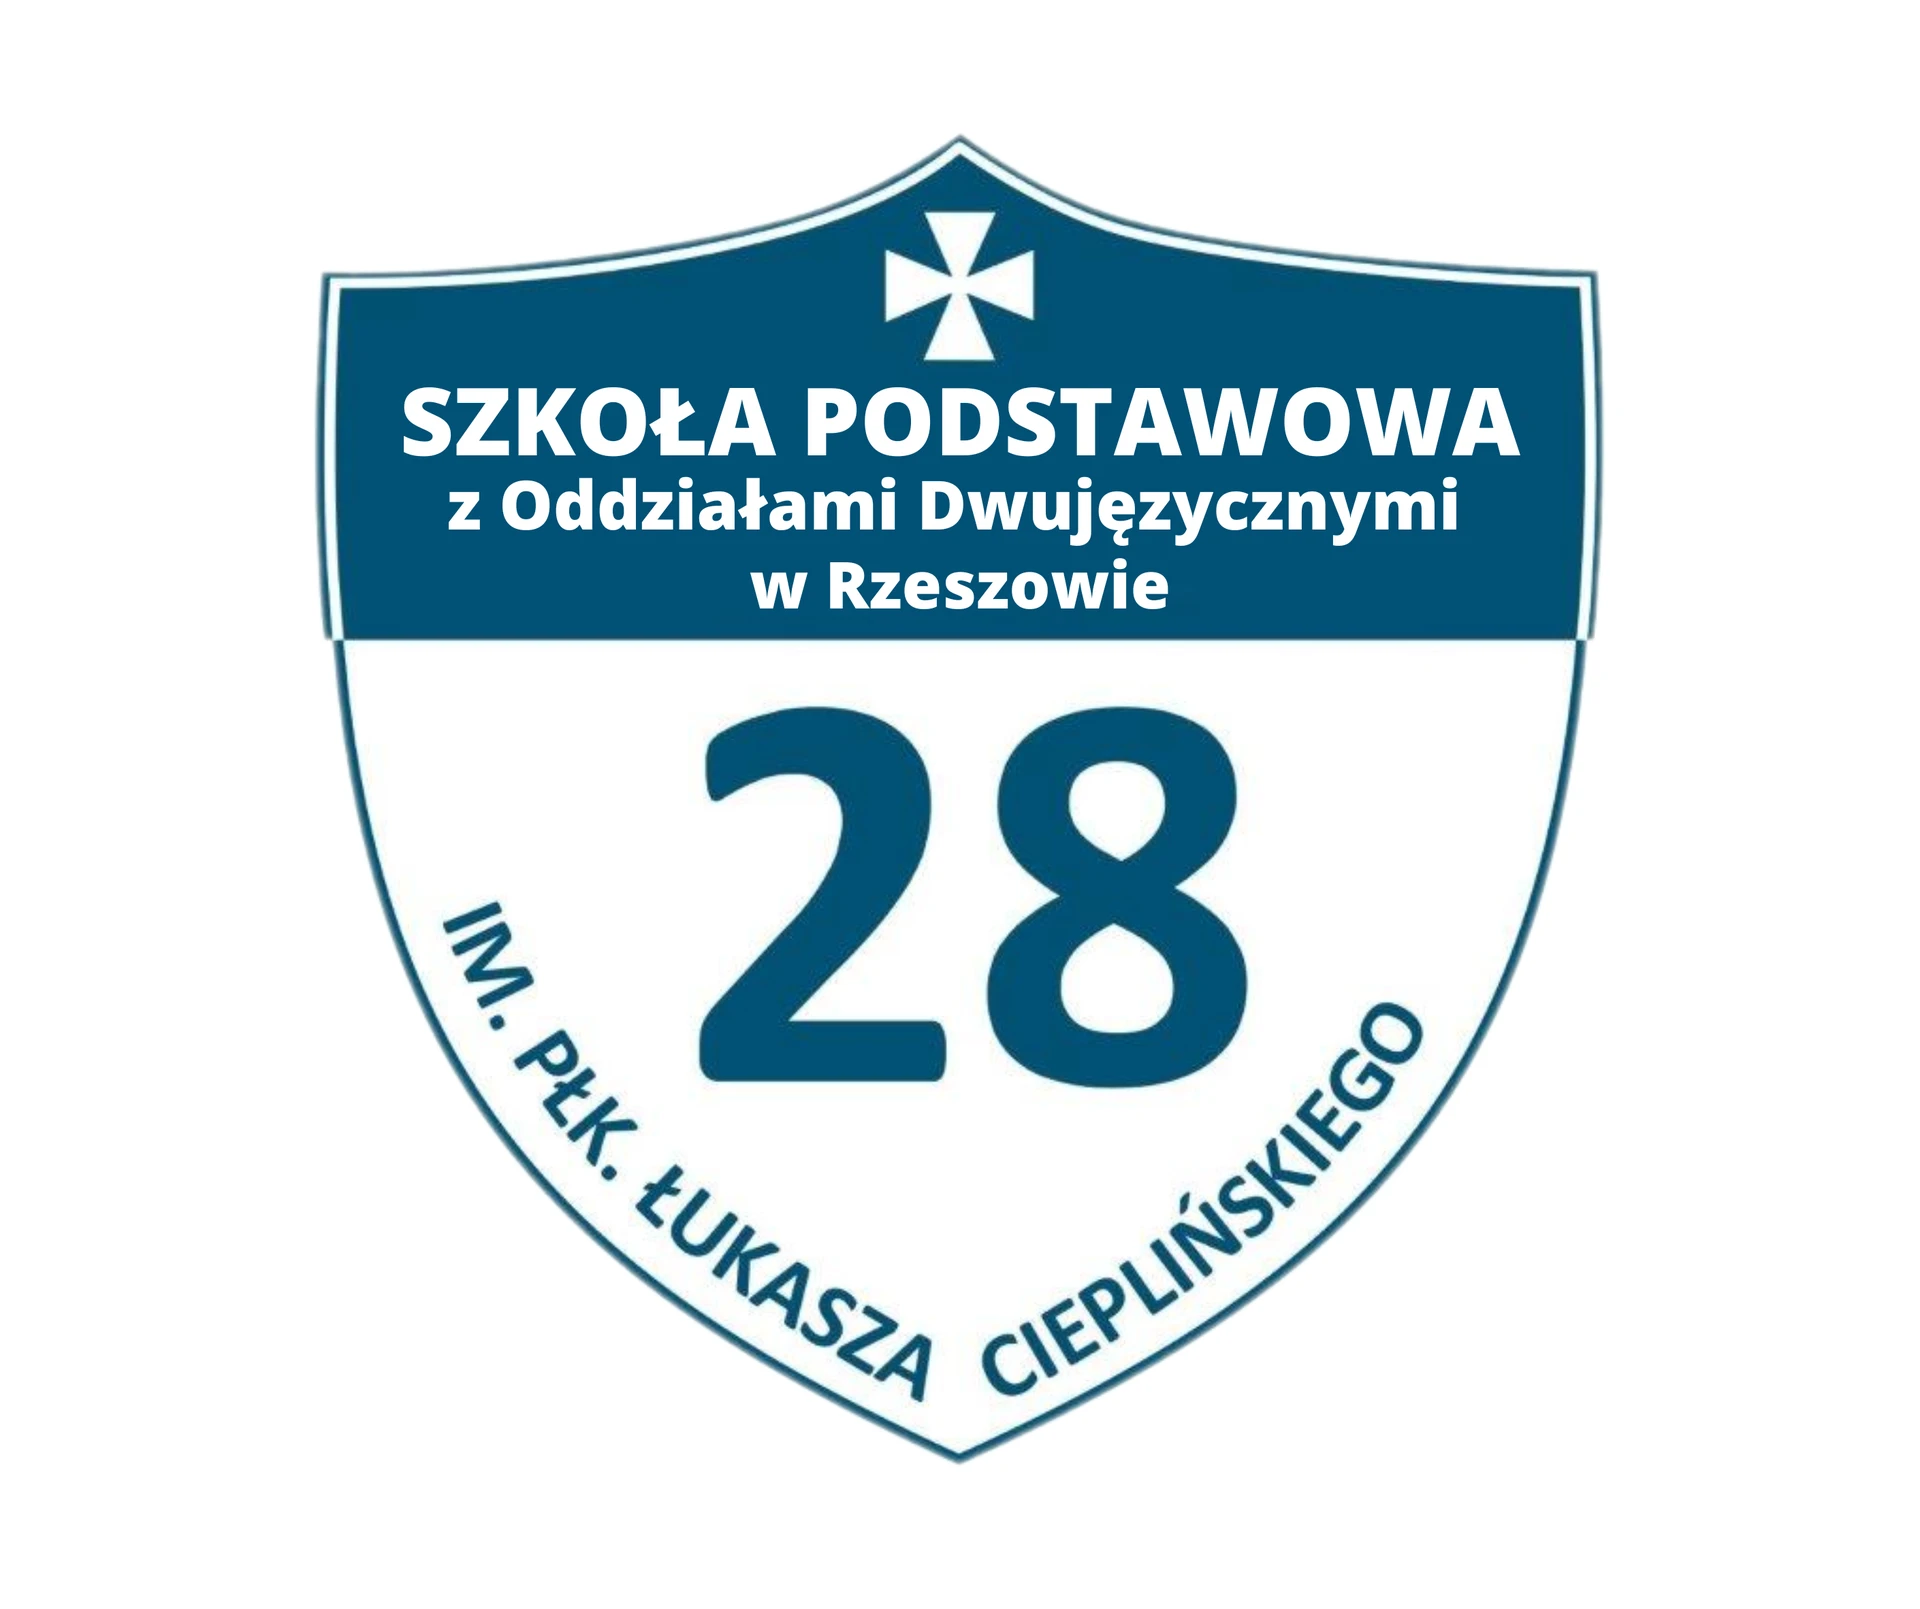 Szkoła Podstawowa Nr 28 z Oddziałami Dwujęzycznymi  im. płk Ł. Cieplińskiego w Rzeszowie